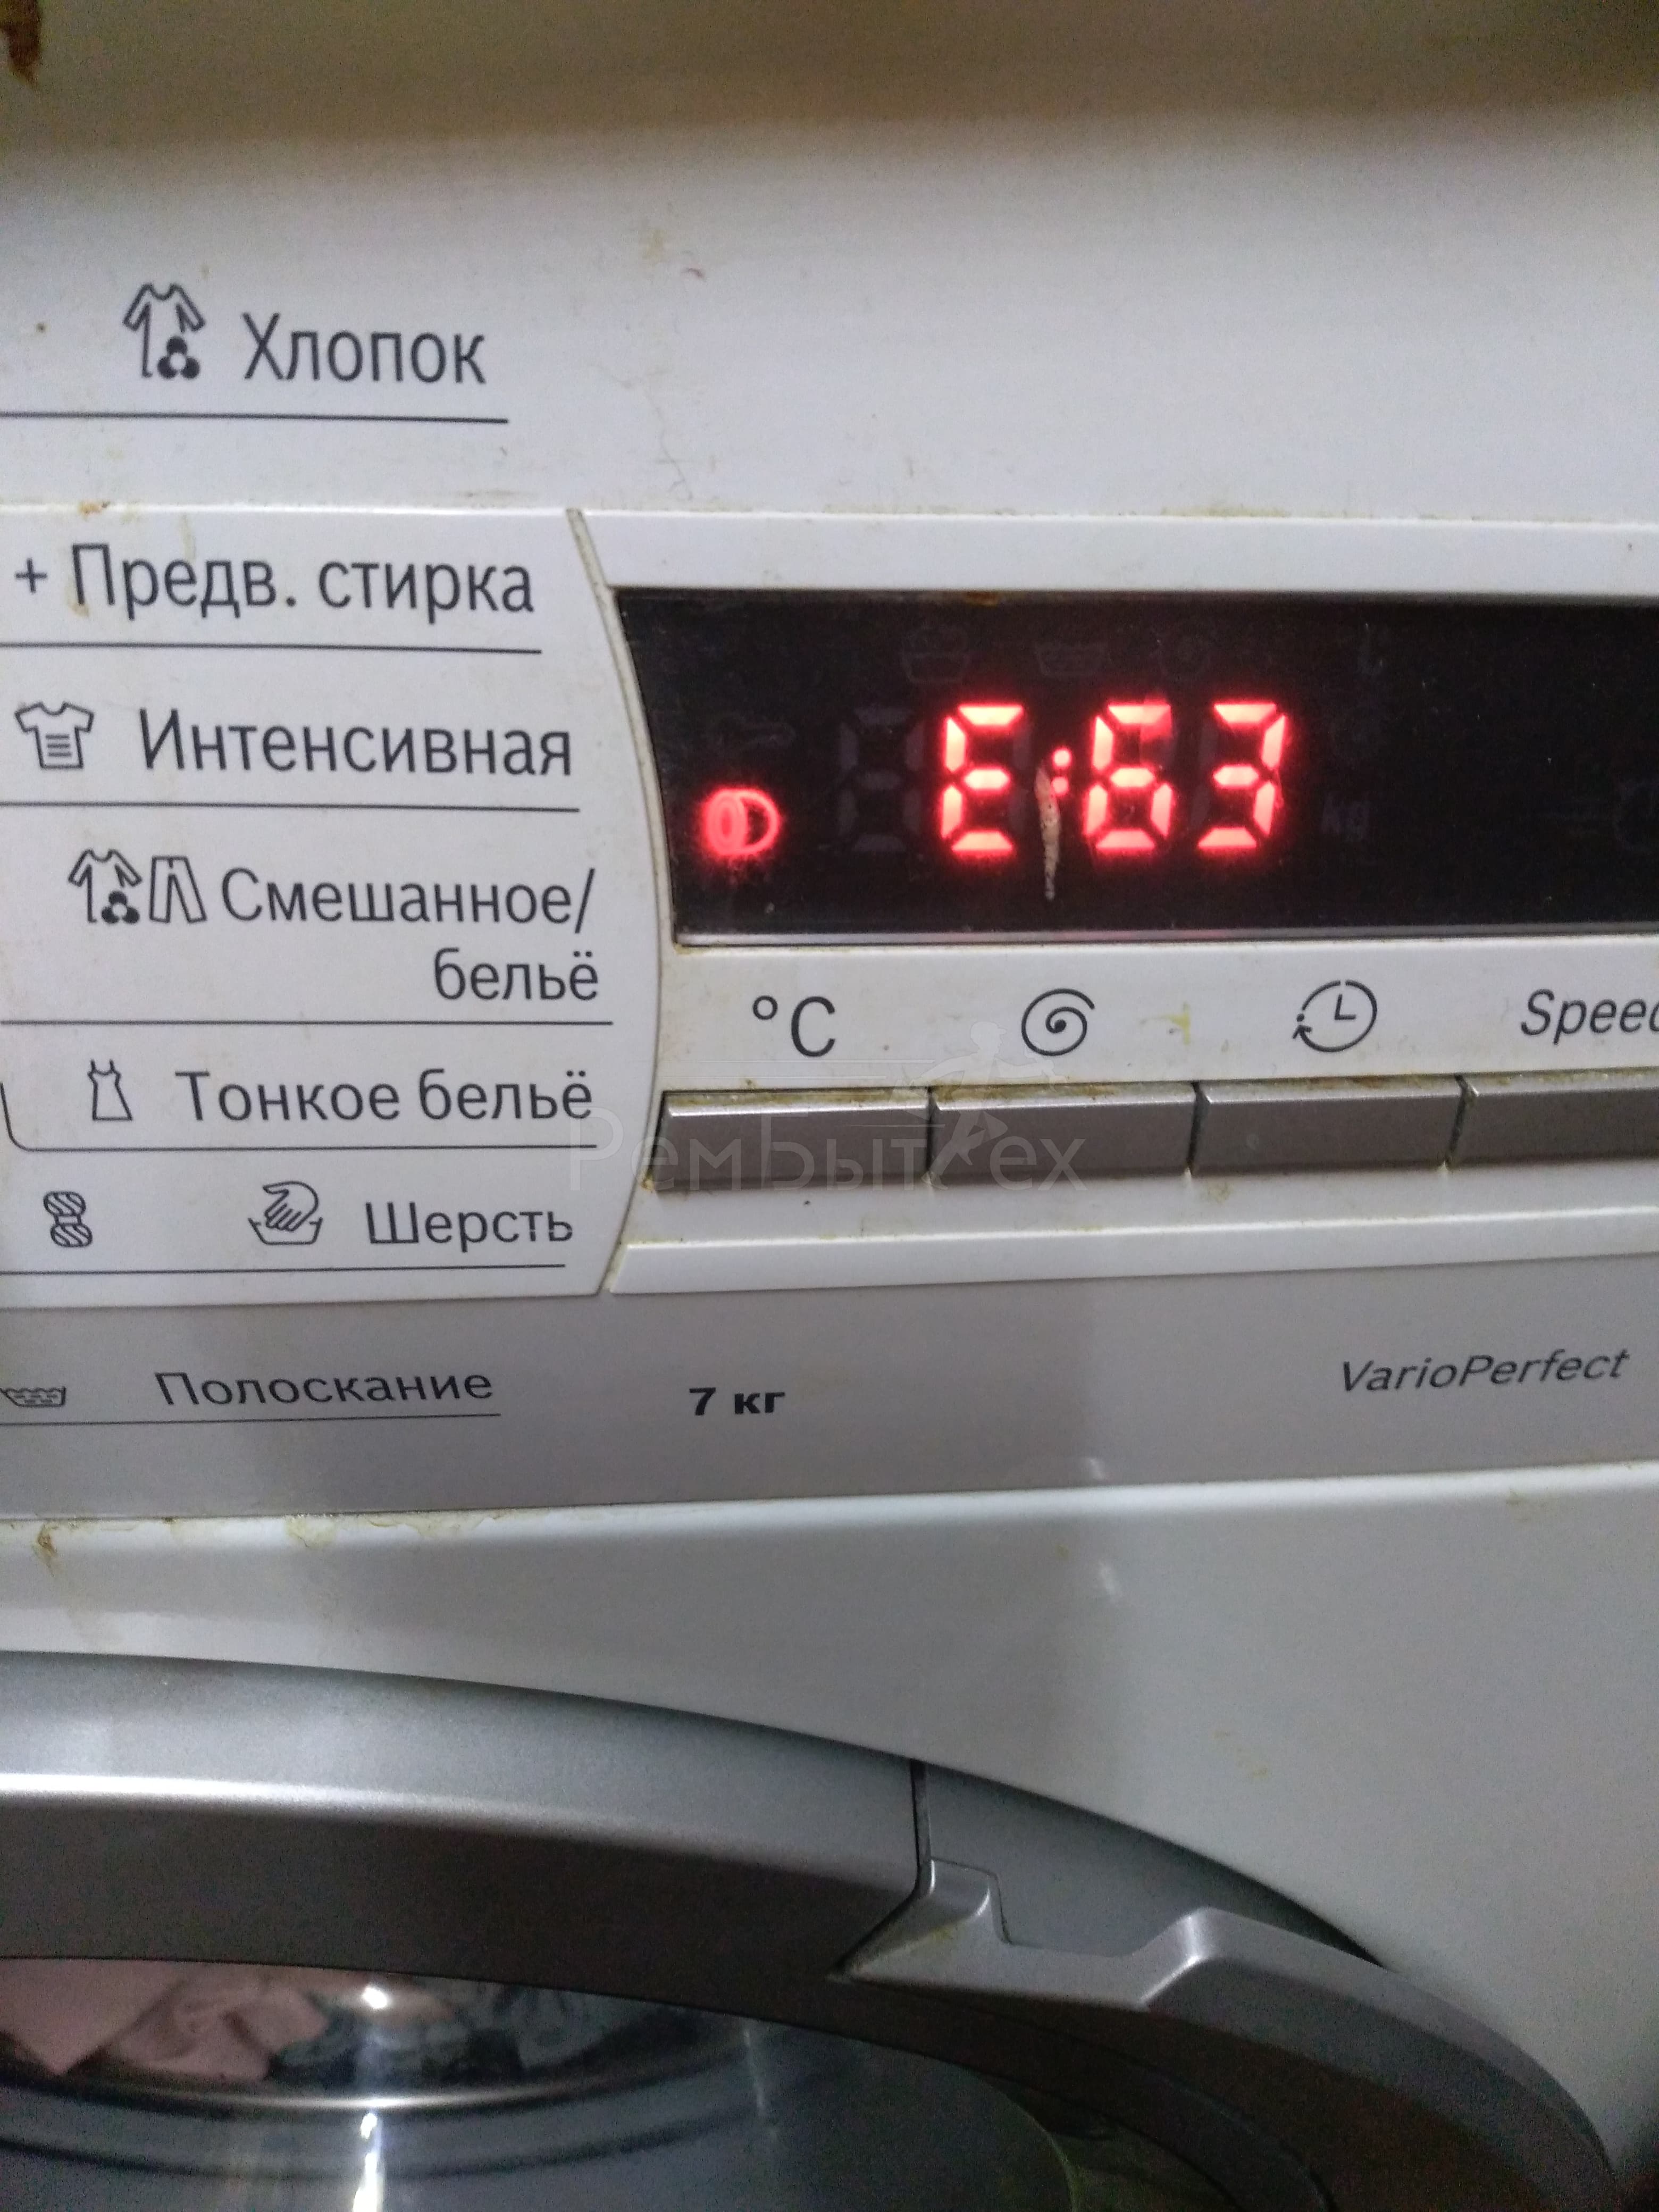 Коды ошибок стиральных машин Samsung. Ошибки на стиральной машине самсунг расшифровка. Ошибки в машинке самсунг автомат. Интенсивная стирка в стиральной машине самсунг. Стиральная машина самсунг что означает 4е